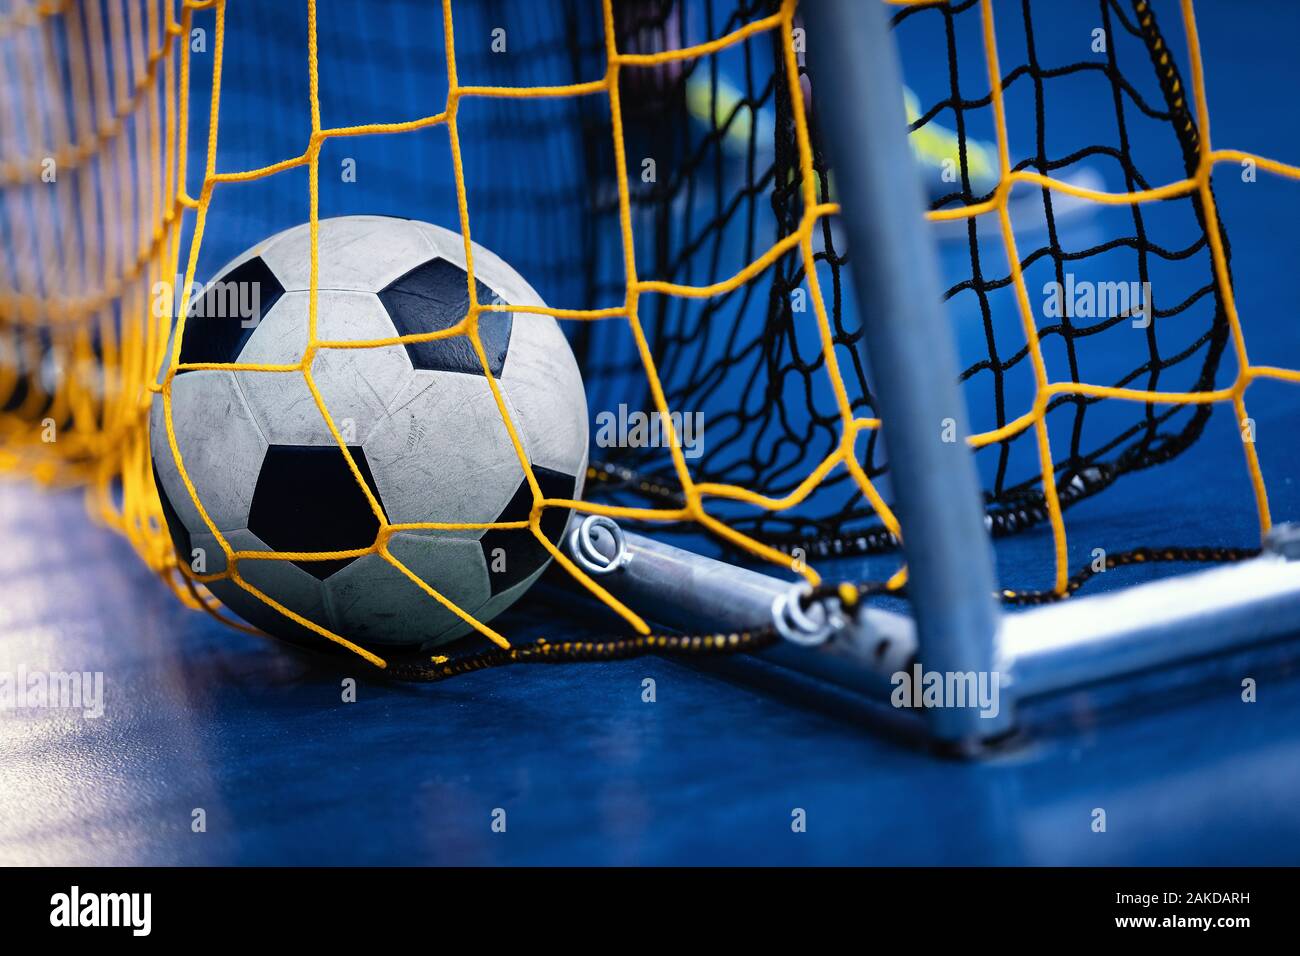 Pelota fútbol sala fotografías e imágenes resolución - Alamy